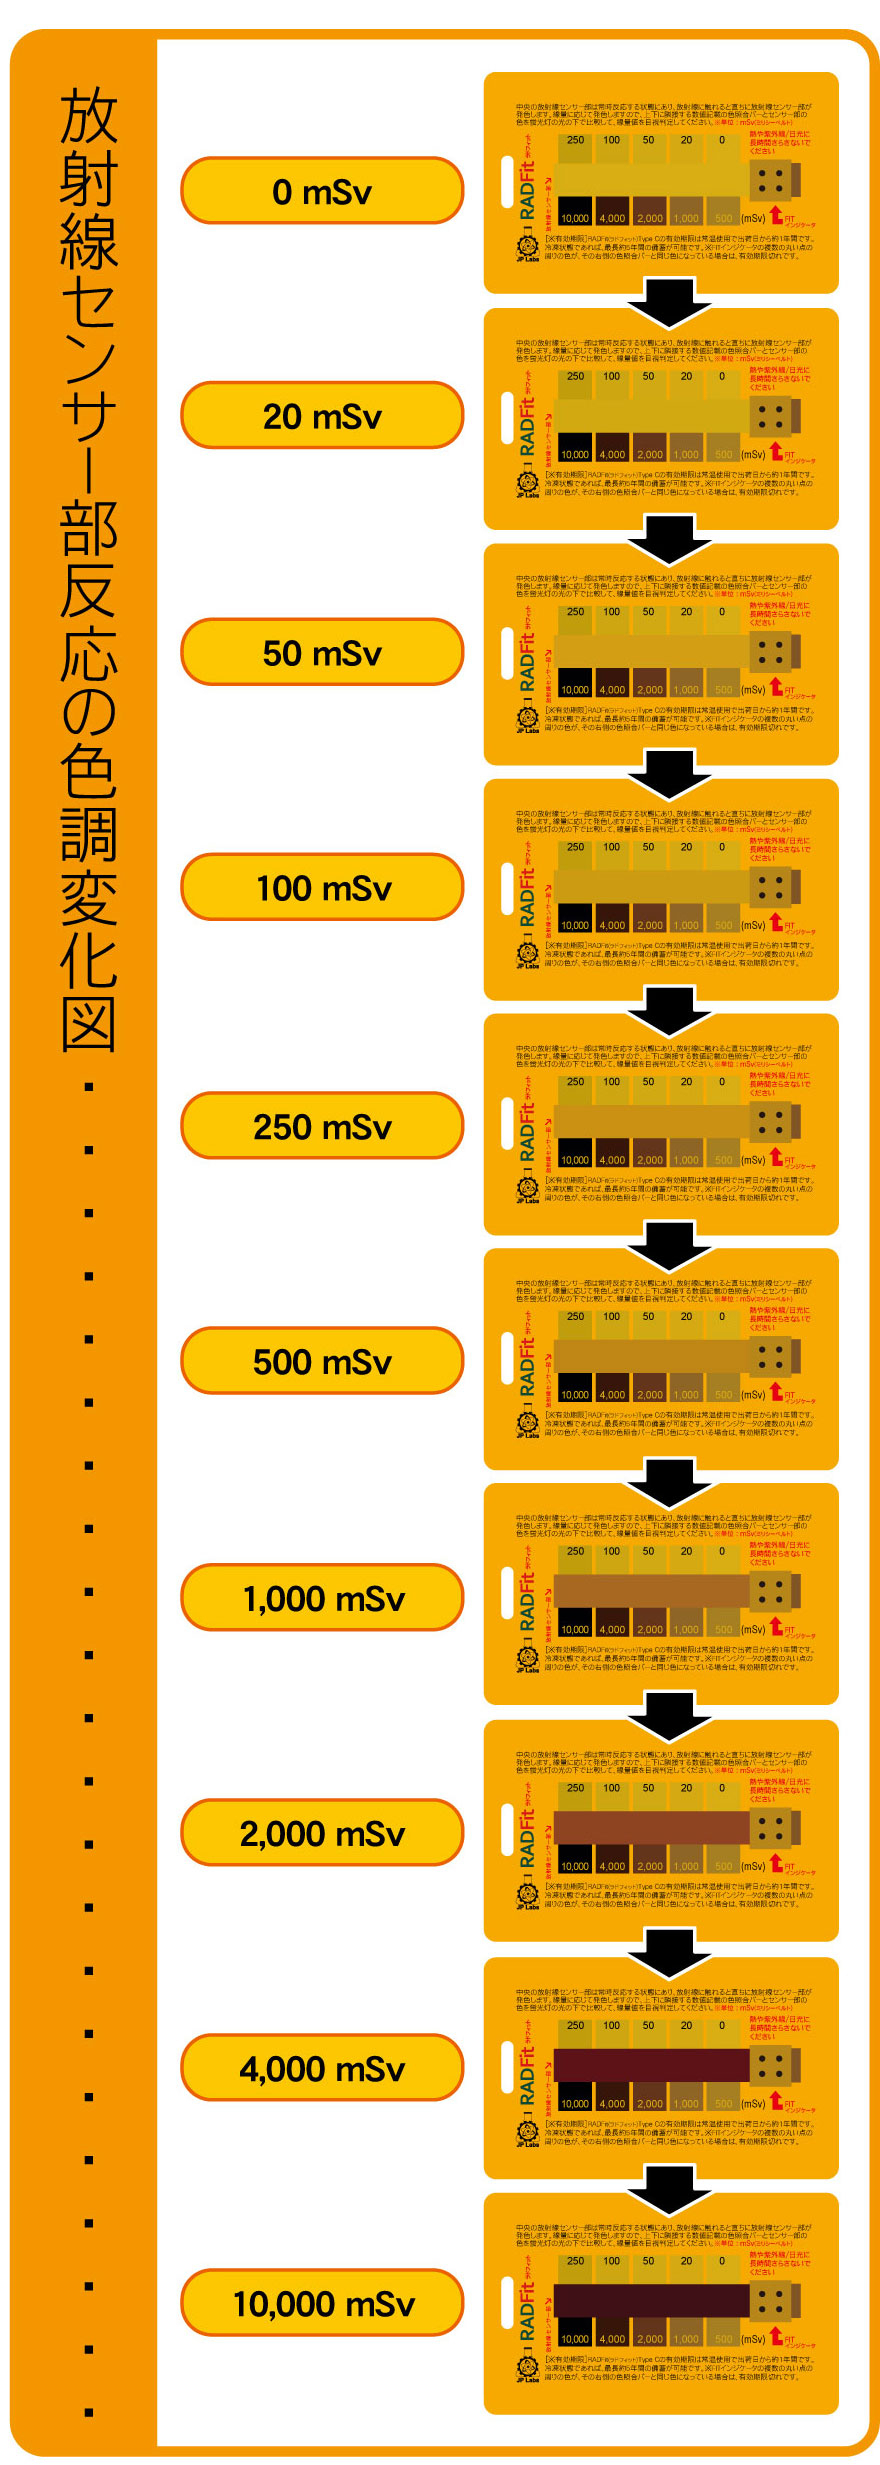 累積放射線量が一目で分かる！ 携帯型累積放射線量計「RADFit(ラドフィット)」6月24日発売 http://www.radfit.jp